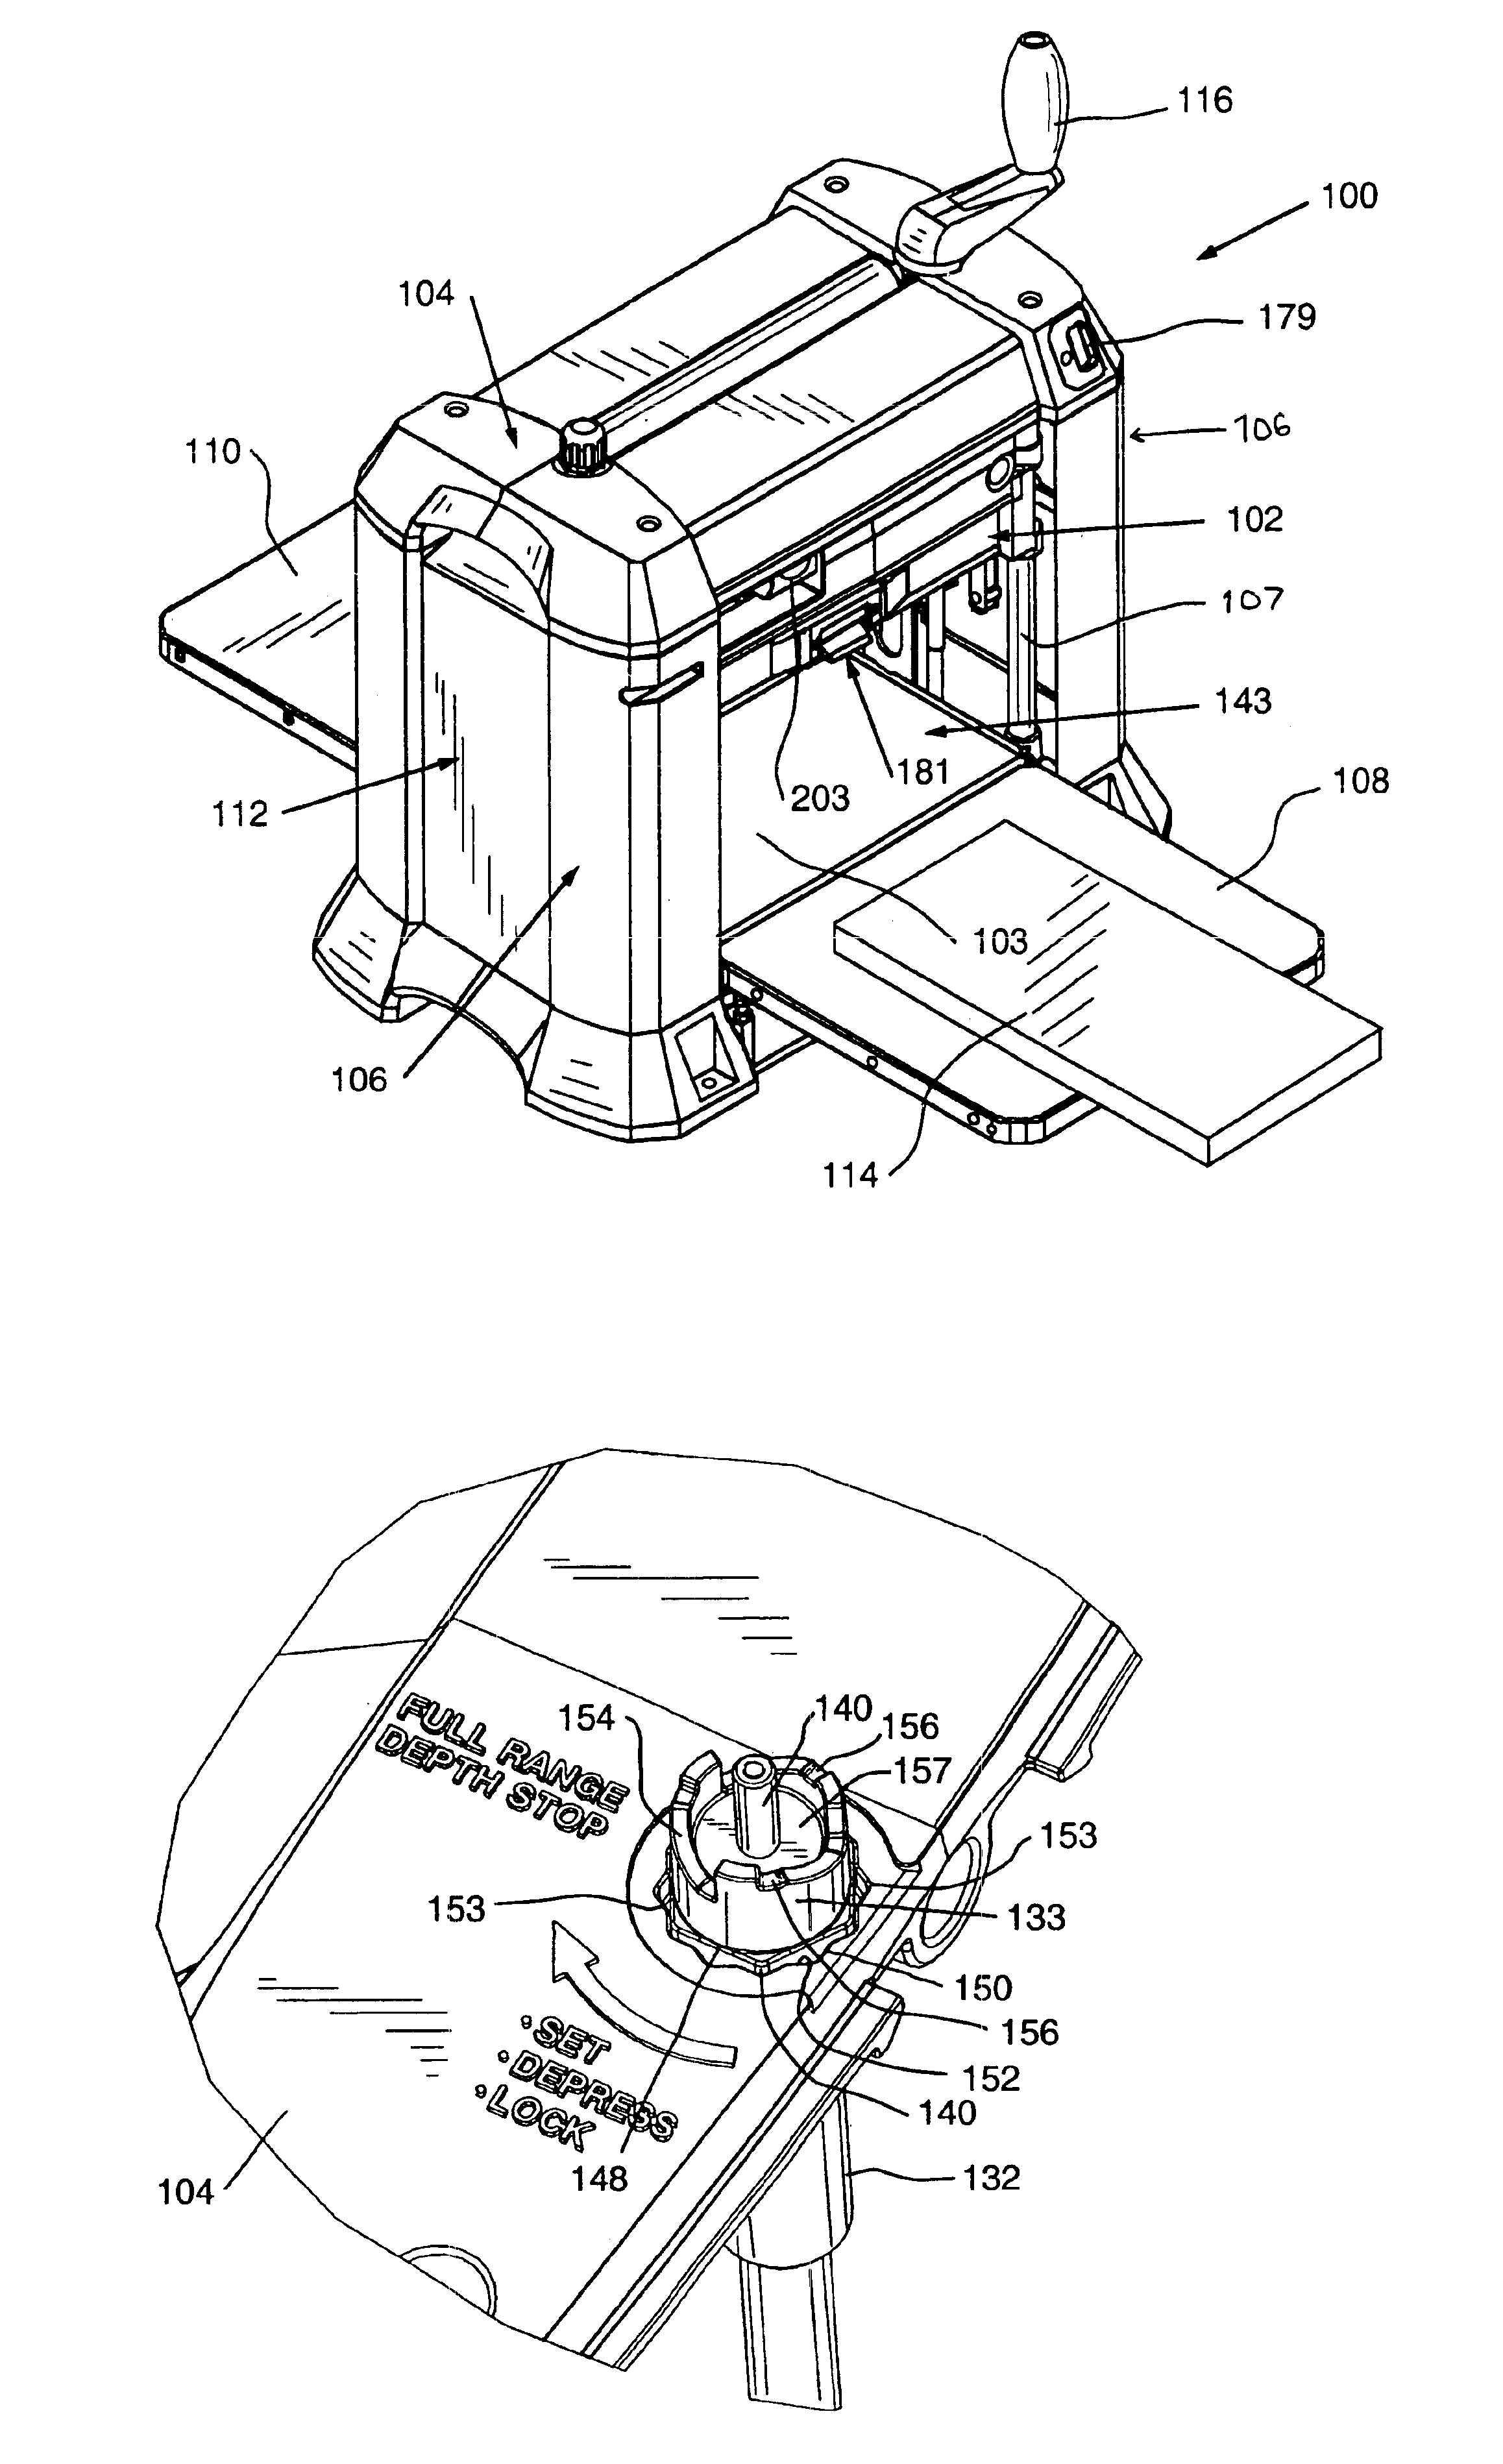 Planer apparatus